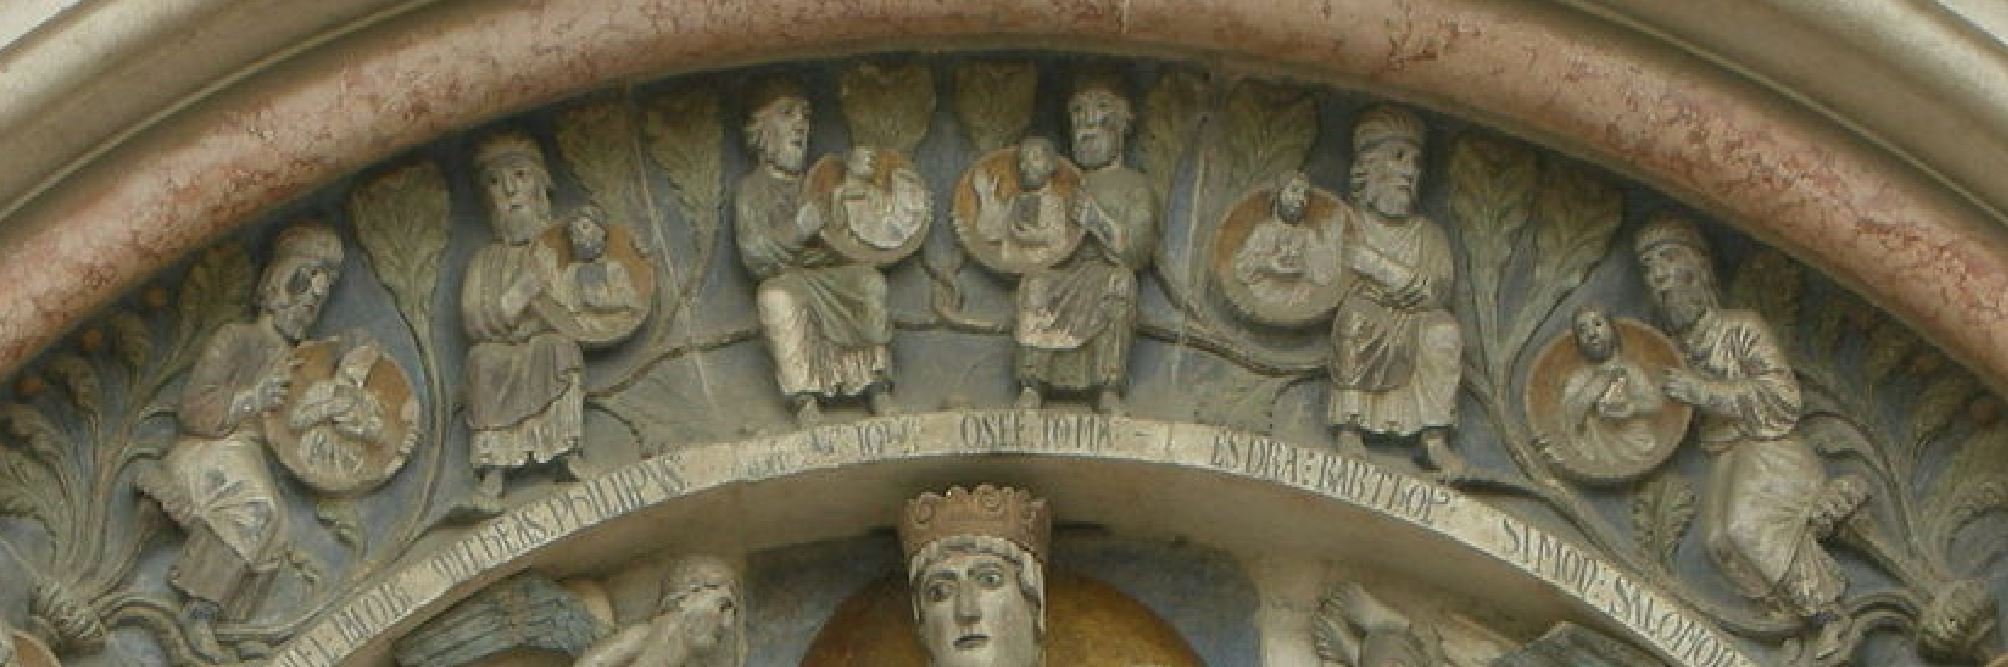 Antelami 1196 Portail de la Vierge Baptistere de Parme detail